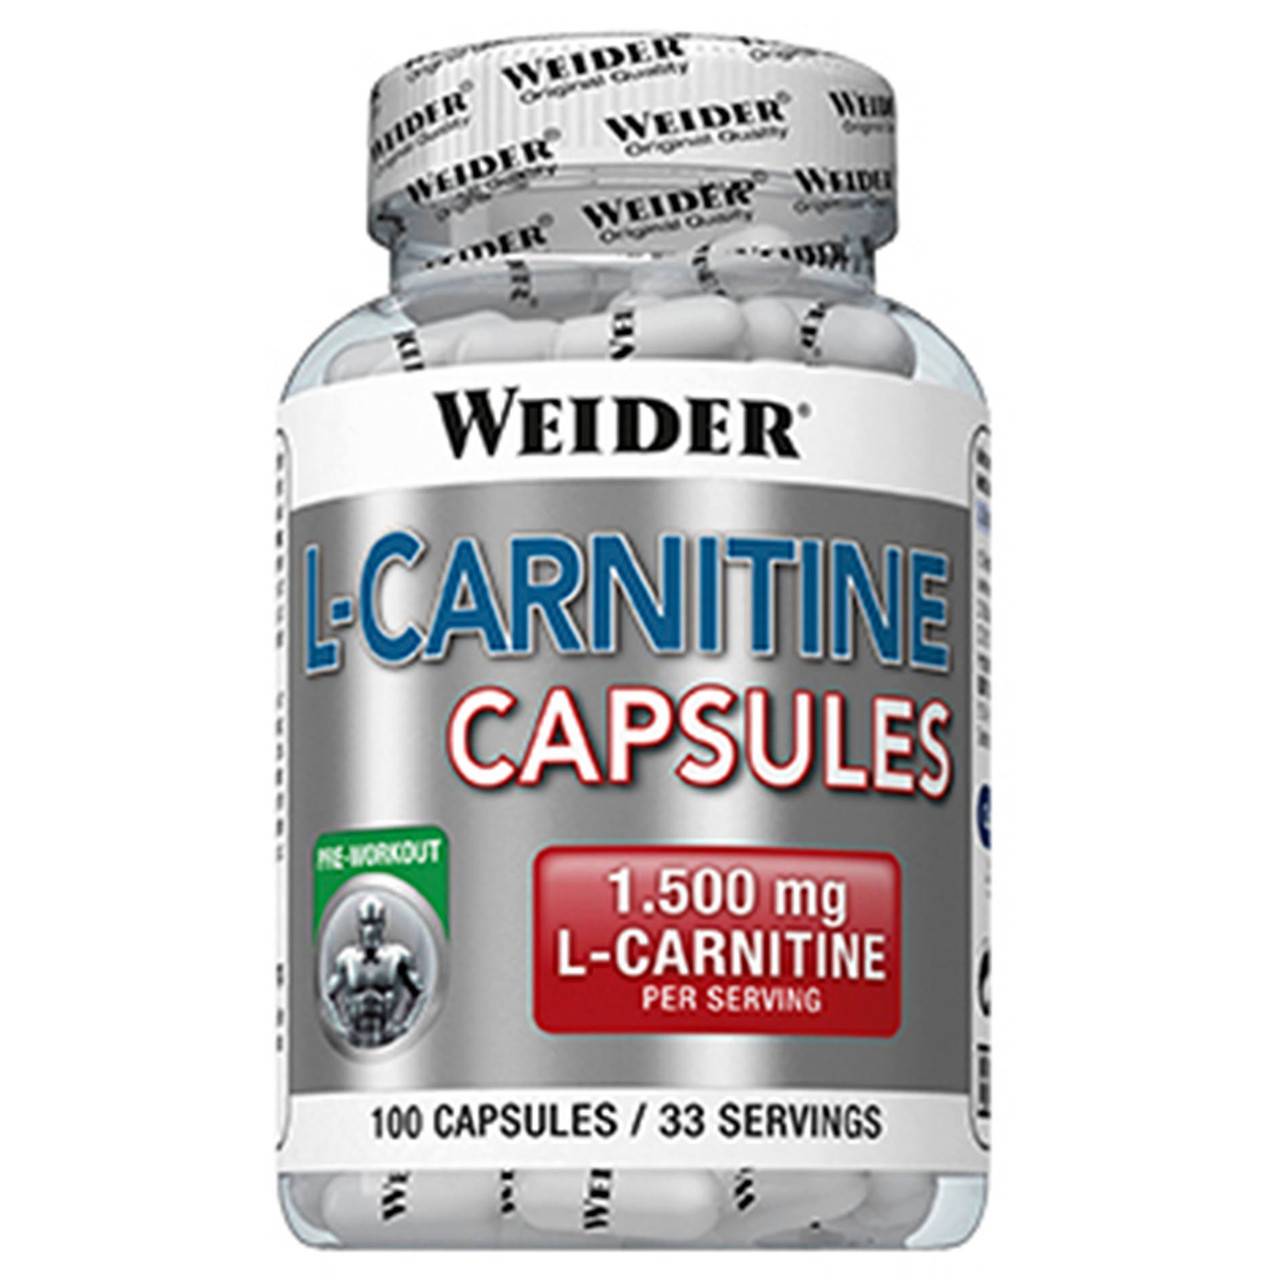 L-карнитин, витамин b11: инструкция по применению для похудения | food and health